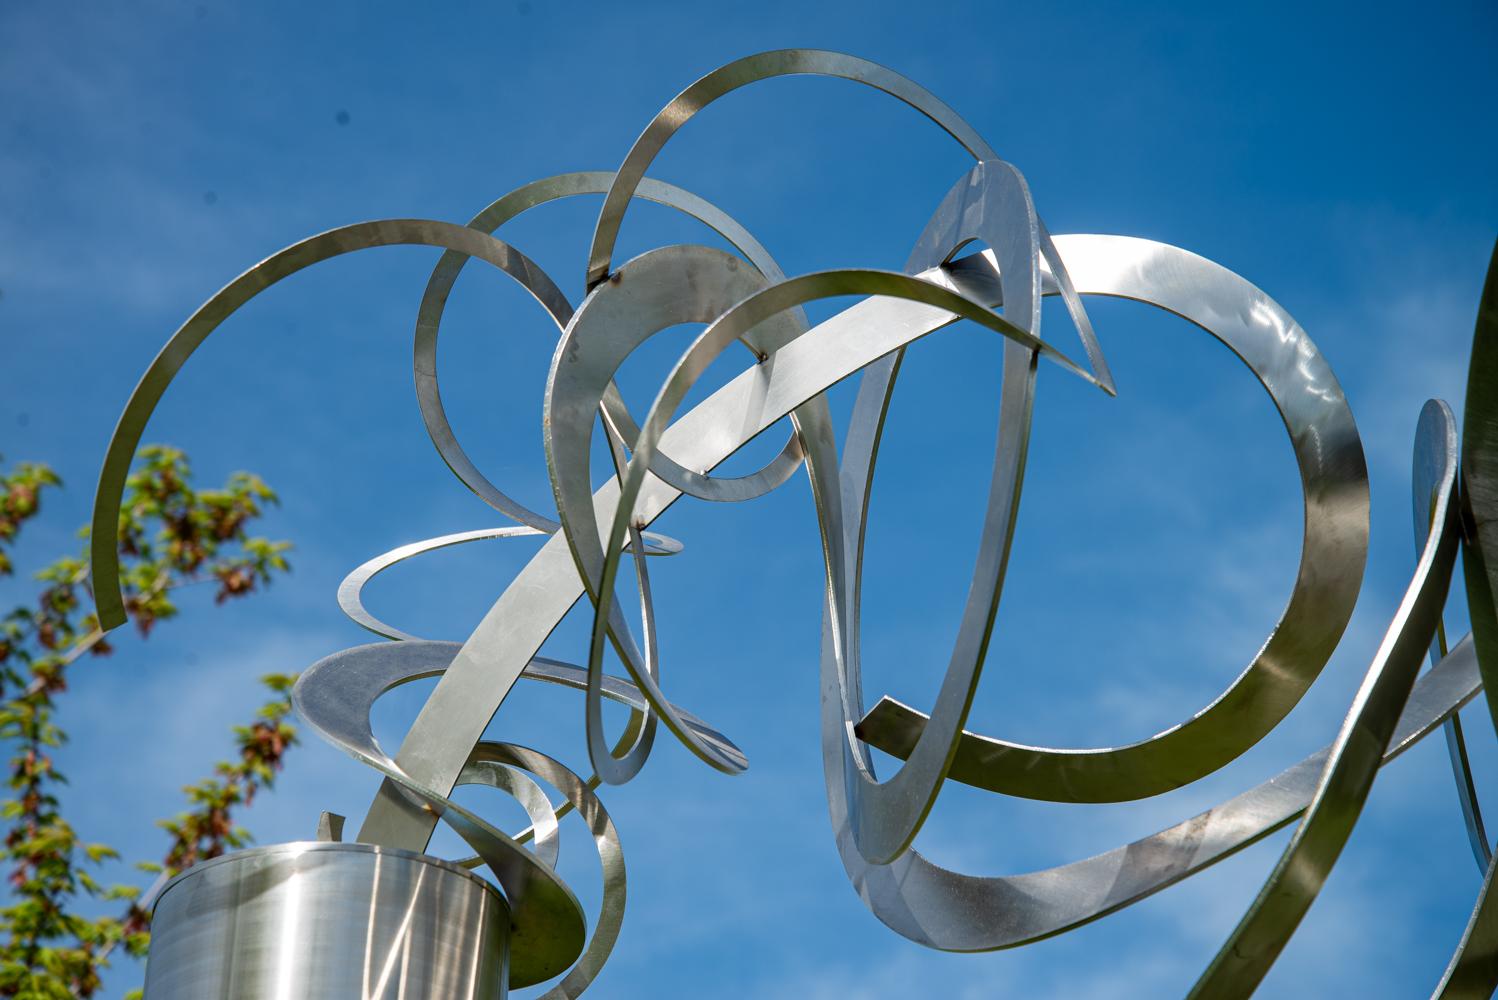 Diese elegante abstrakte Skulptur stammt von den Künstlerinnen Ann Bartok und Olena Kassian aus Toronto. Fein gewundene Bänder aus Edelstahl sitzen auf einem großen Zylinder, der das Sonnenlicht reflektiert. Bartok und Kassian, die seit ihrer ersten